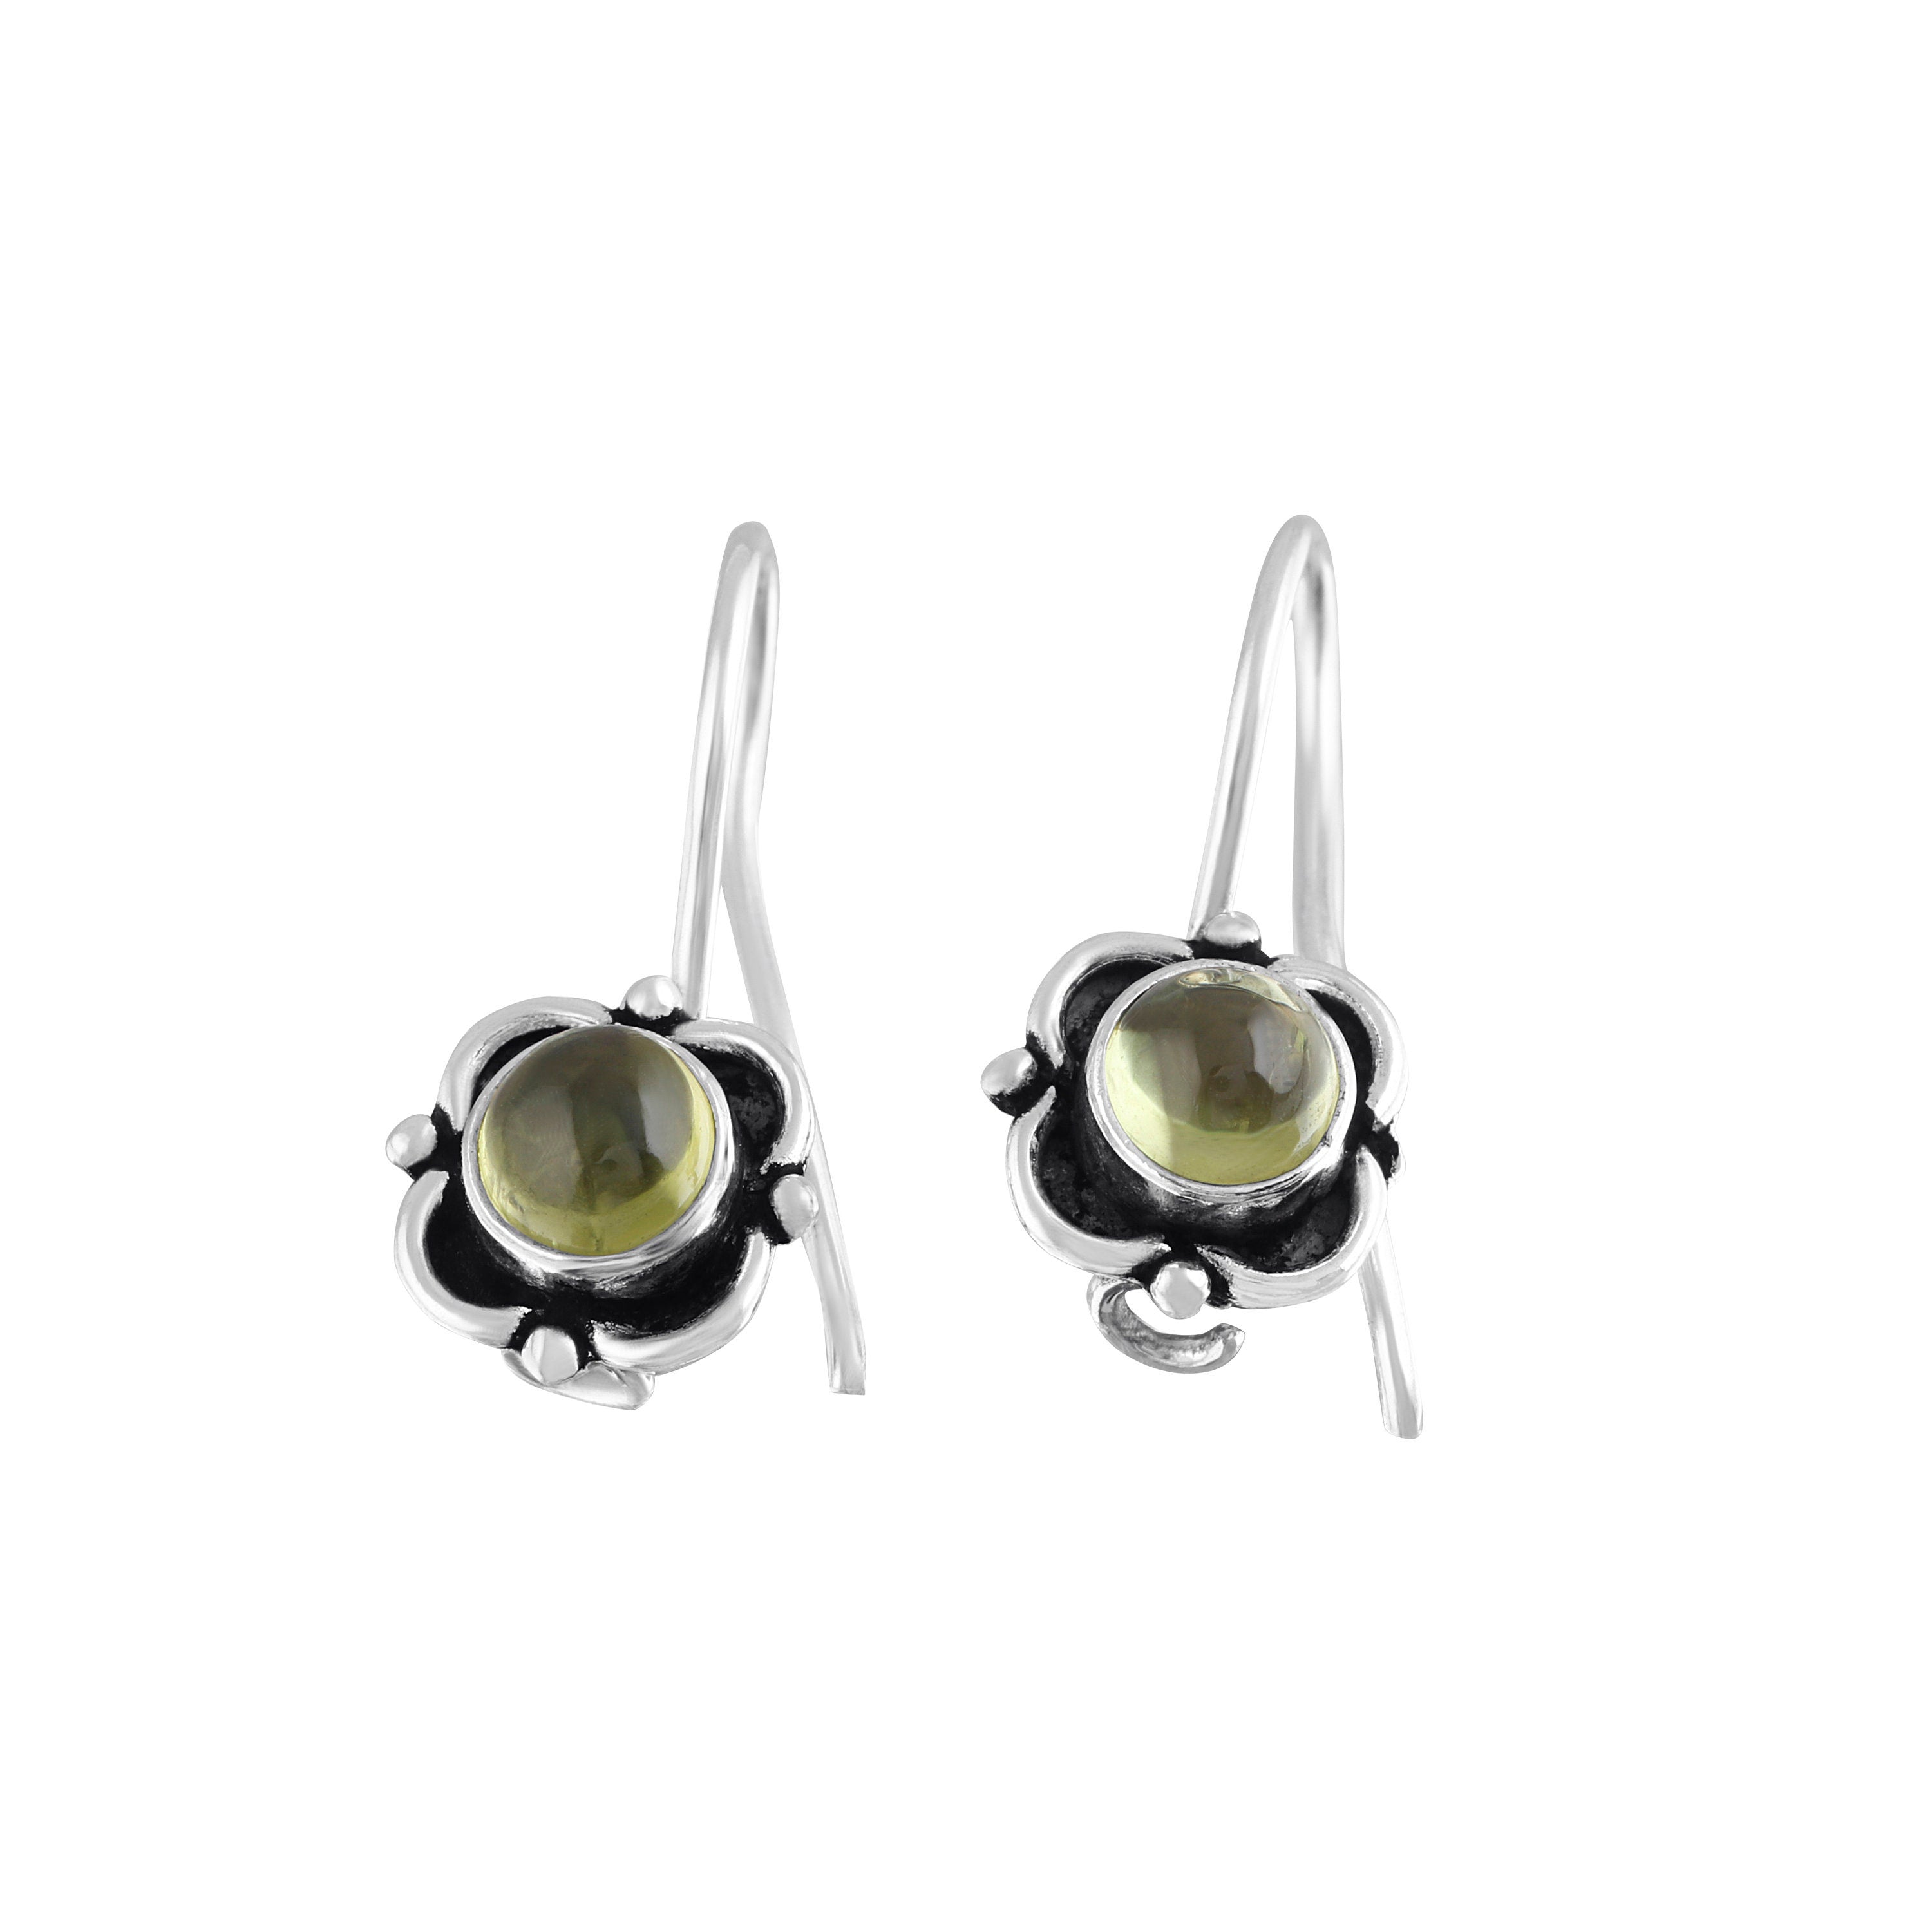 Amazon.com: Green peridot earring, 92.5 sterling silver, genuine peridot,gemstone  earring, August birthstone earring, Sterling Peridot earrings,Green Peridot  Earrings, Peridot Earring : Handmade Products